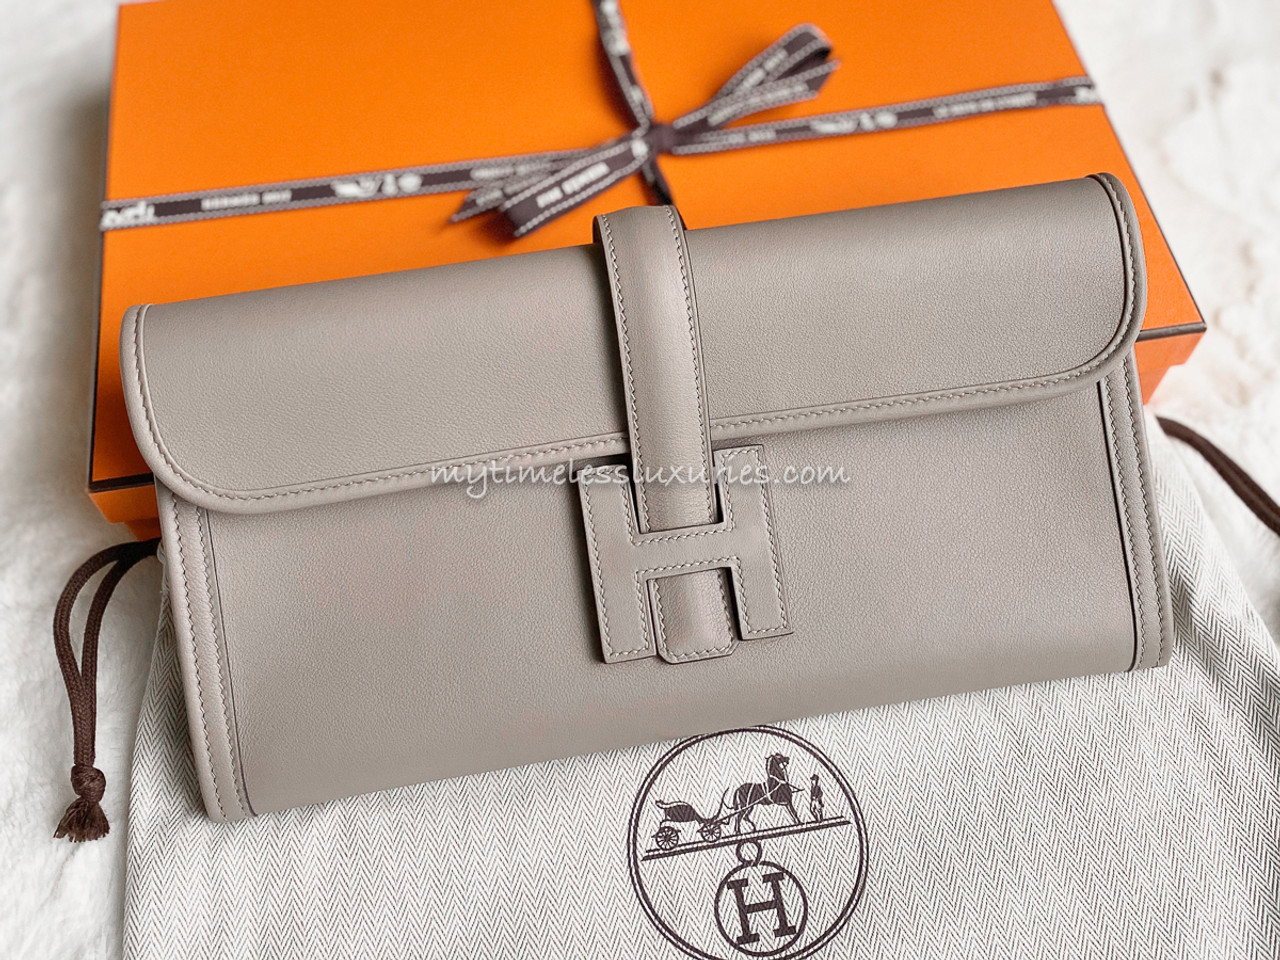 Hermes Bag--Jige 29 Clutch--EXCELLENT CONDITION w/Box & Dust Bag